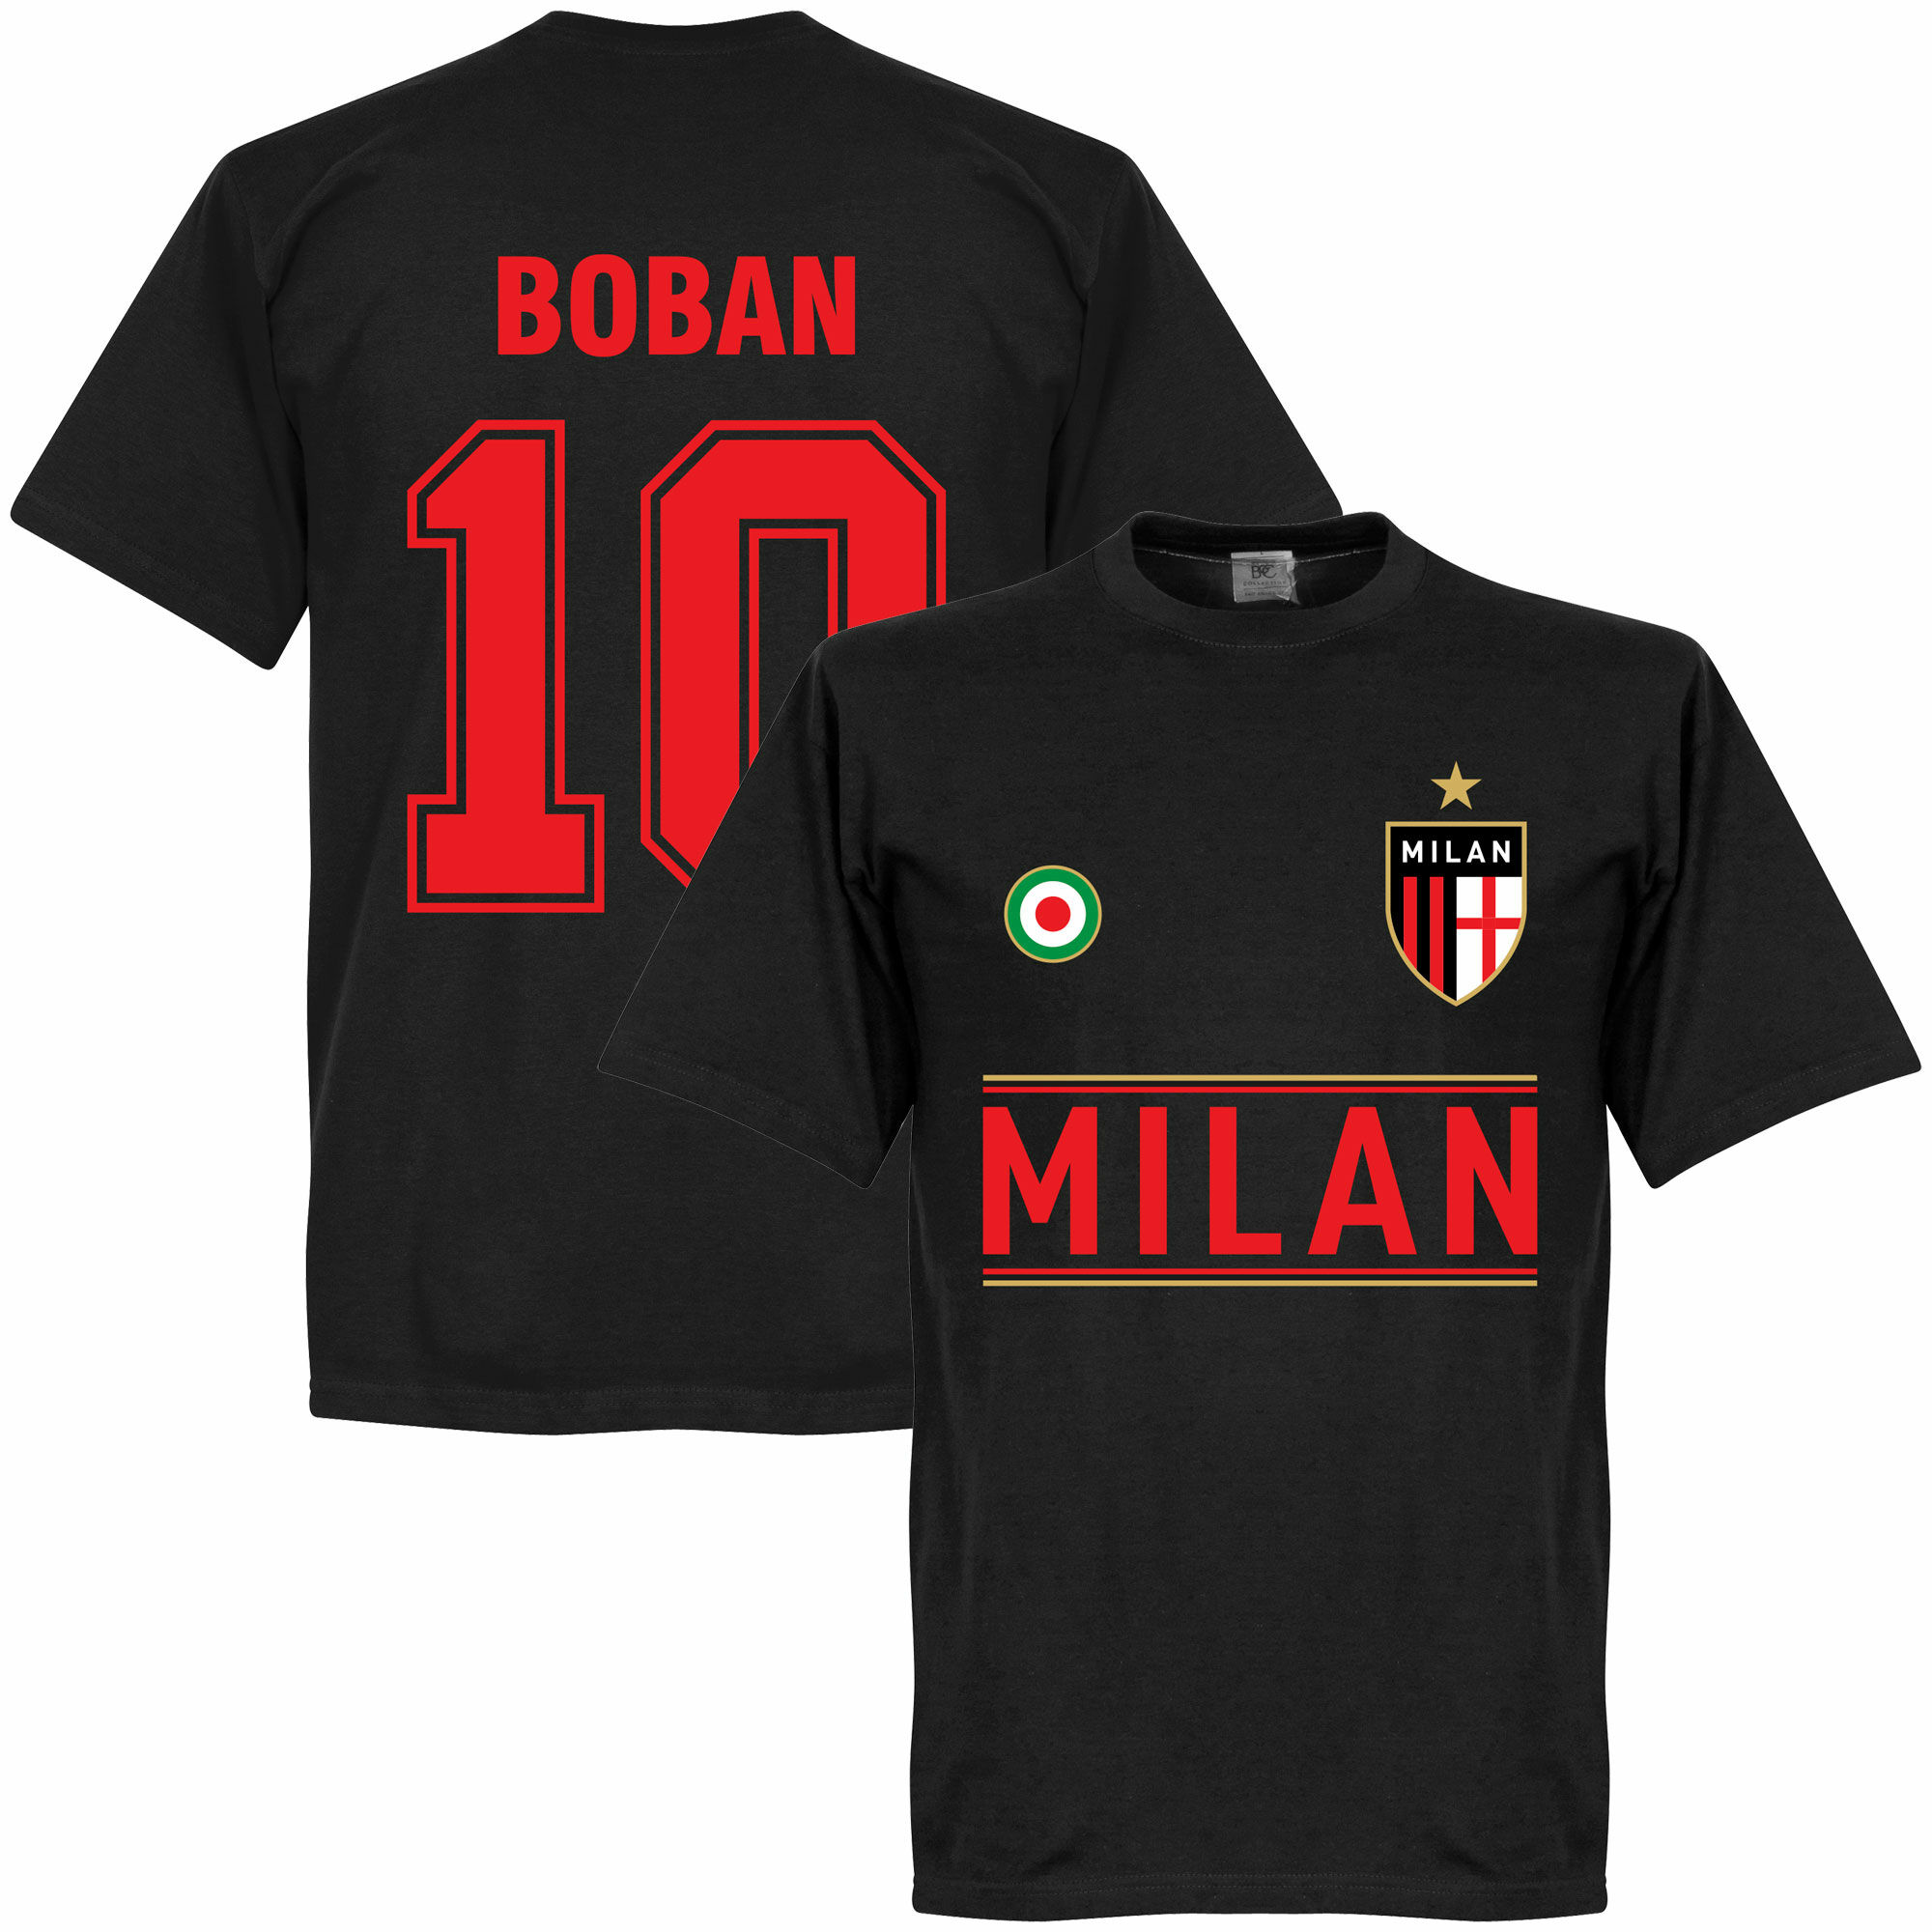 AC Milán - Tričko - číslo 10, Zvonimir Boban, černé